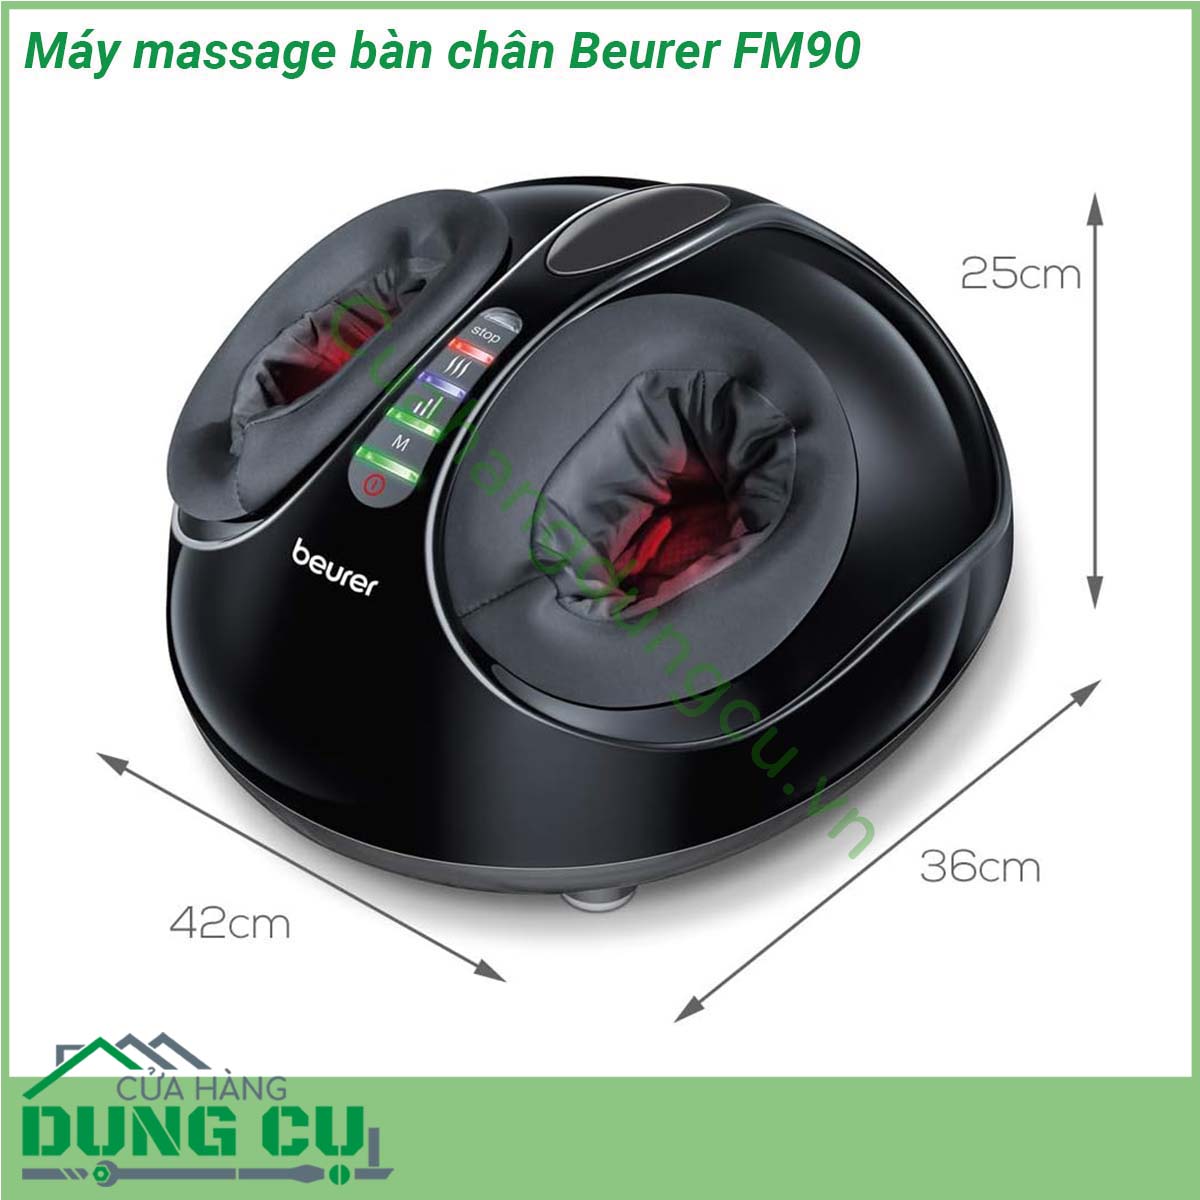 Máy massage bàn chân Beurer FM90 có kiểu dáng gọn gàng dễ sử dụng với hệ thống đèn LED giúp bạn quan sát dễ dàng các chức năng đang hoạt động vỏ máy có thể dễ dàng tháo rời để giặt sạch định kì đảm bảo vệ sinh Bên cạnh đó phần đặt bàn chân vừa vặn với cỡ giày 46 vì vậy mọi người trong gia đình đều có thể sử dụng  Máy massage này sẽ giúp kích thích tuần hoàn máu thúc đẩy tái tạo tế bào mới thư giãn các cơ bị căng cũng như tăng cường sức khỏe và độ dẻo dai cho đôi chân nâng cao sức khỏe cho bạn